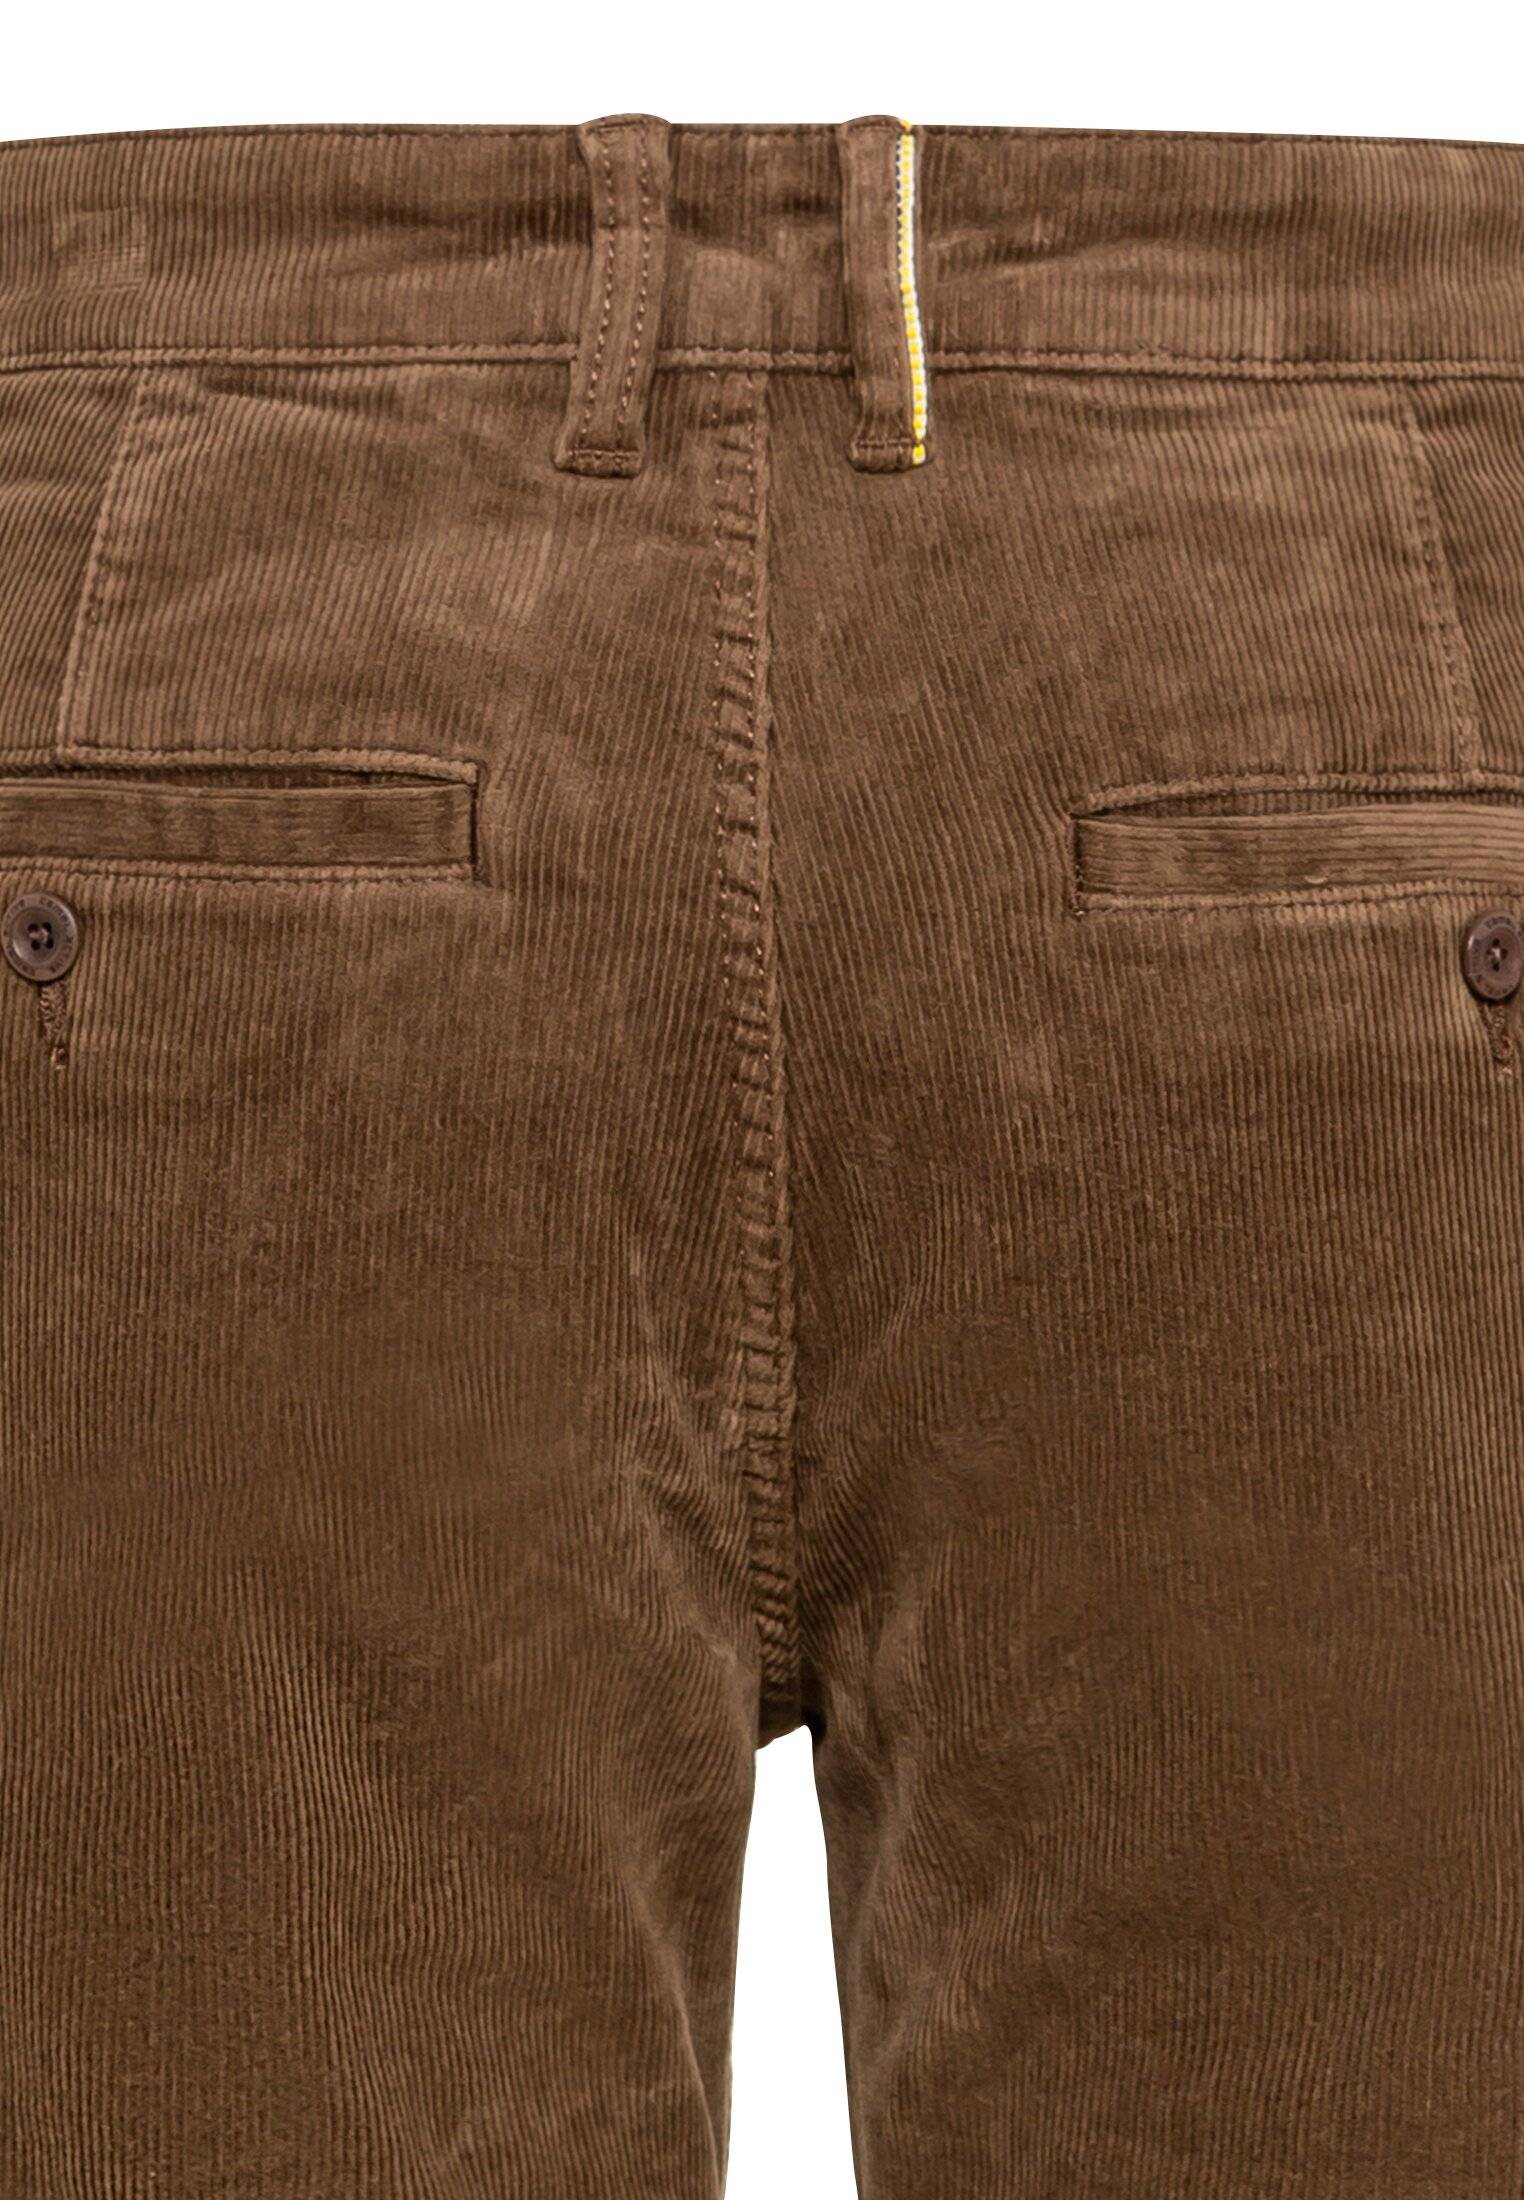 Мужские брюки Camel Active, коричневые, цвет коричневый, размер 34 - фото 4